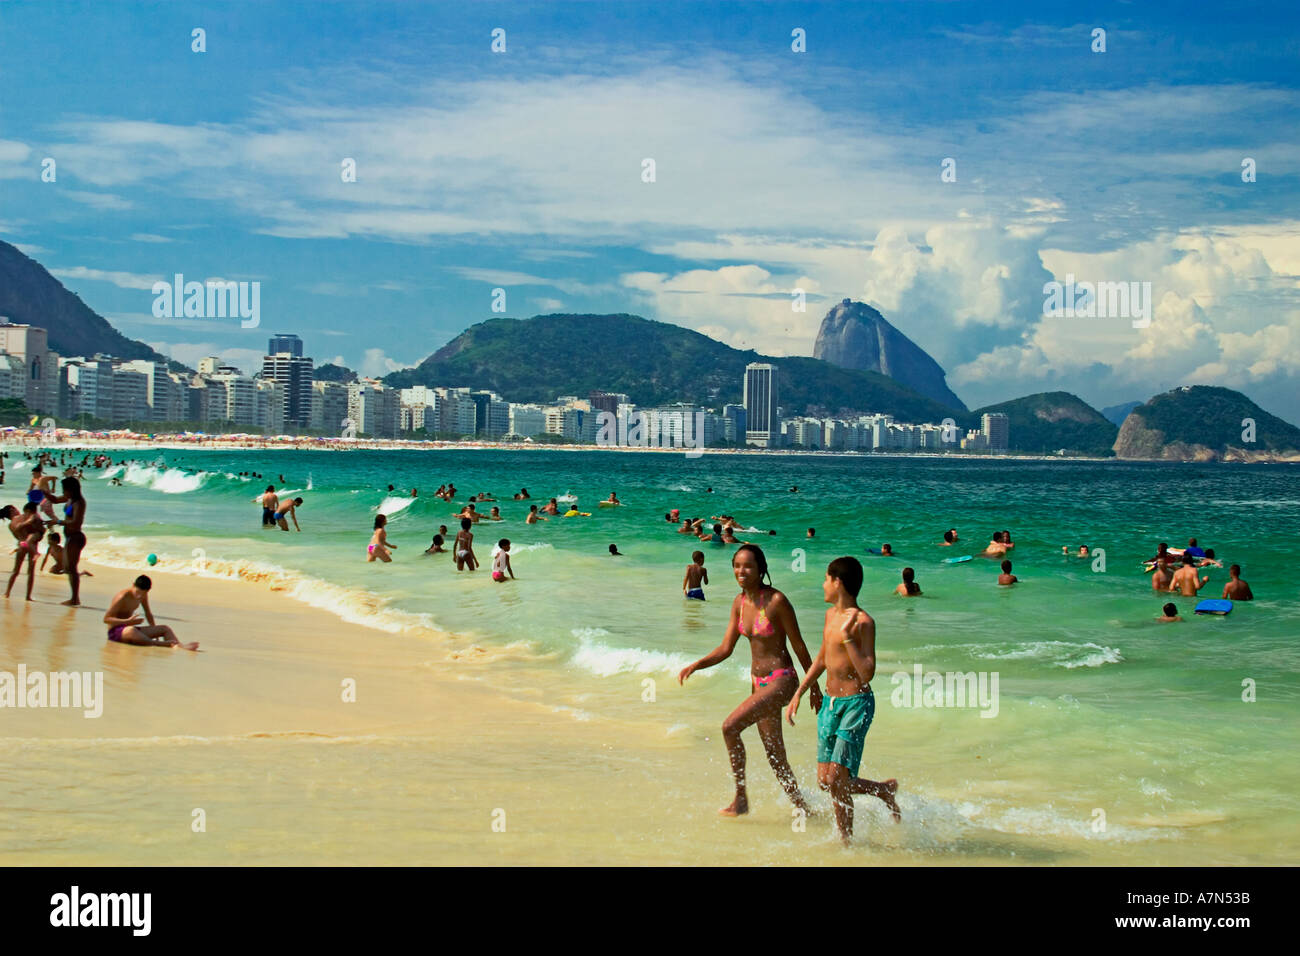 Brasile Rio de Janeiro Copacabana beach Carioca Poa sfondo de Acucar sugarloaf Foto Stock